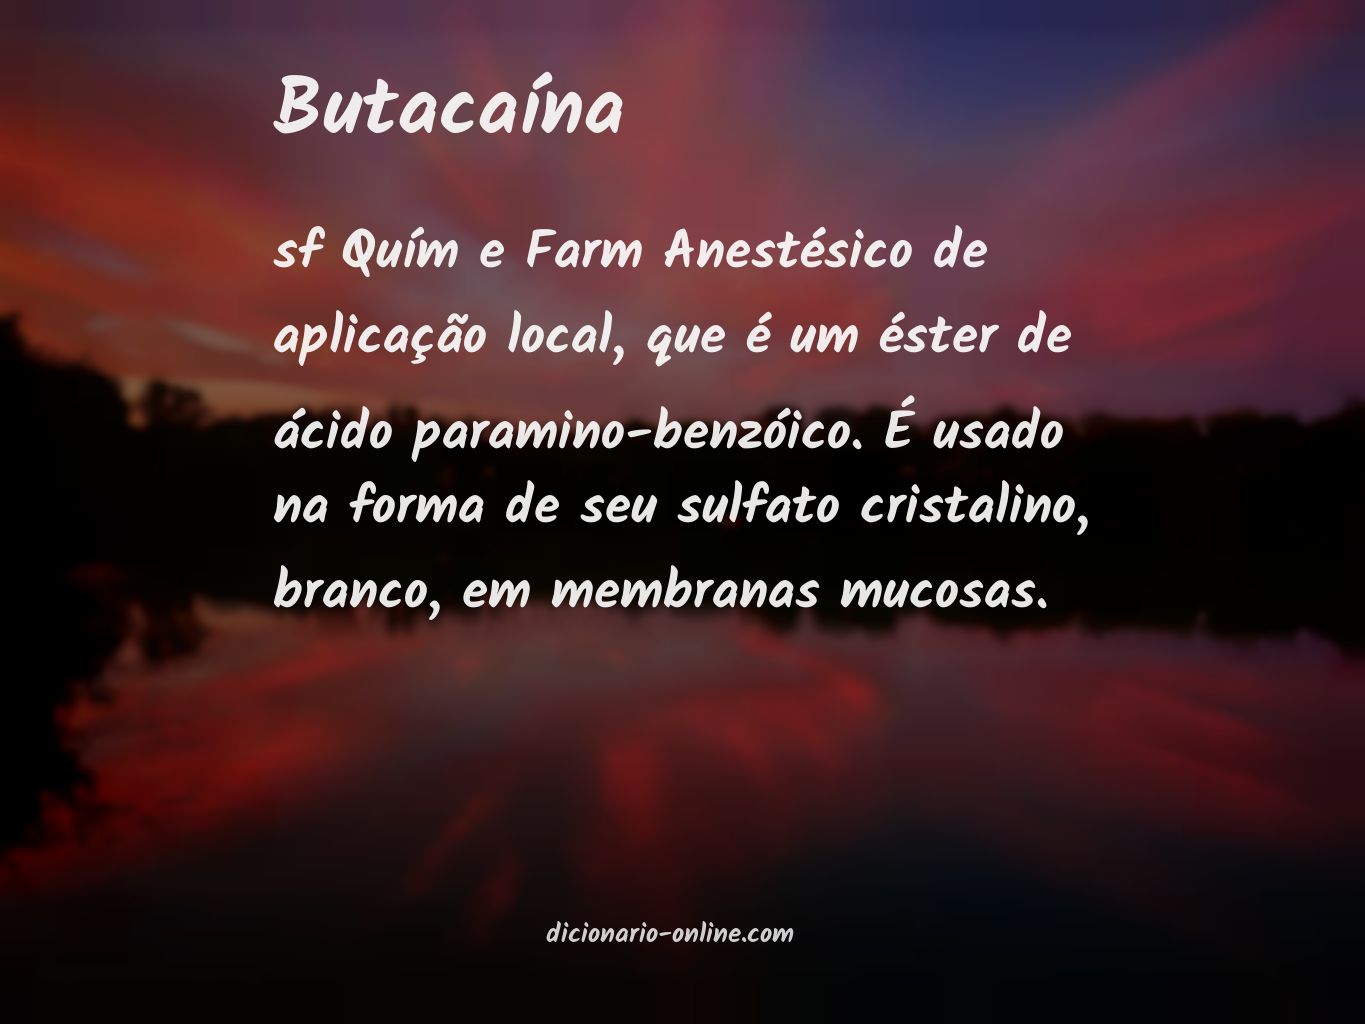 Significado de butacaína